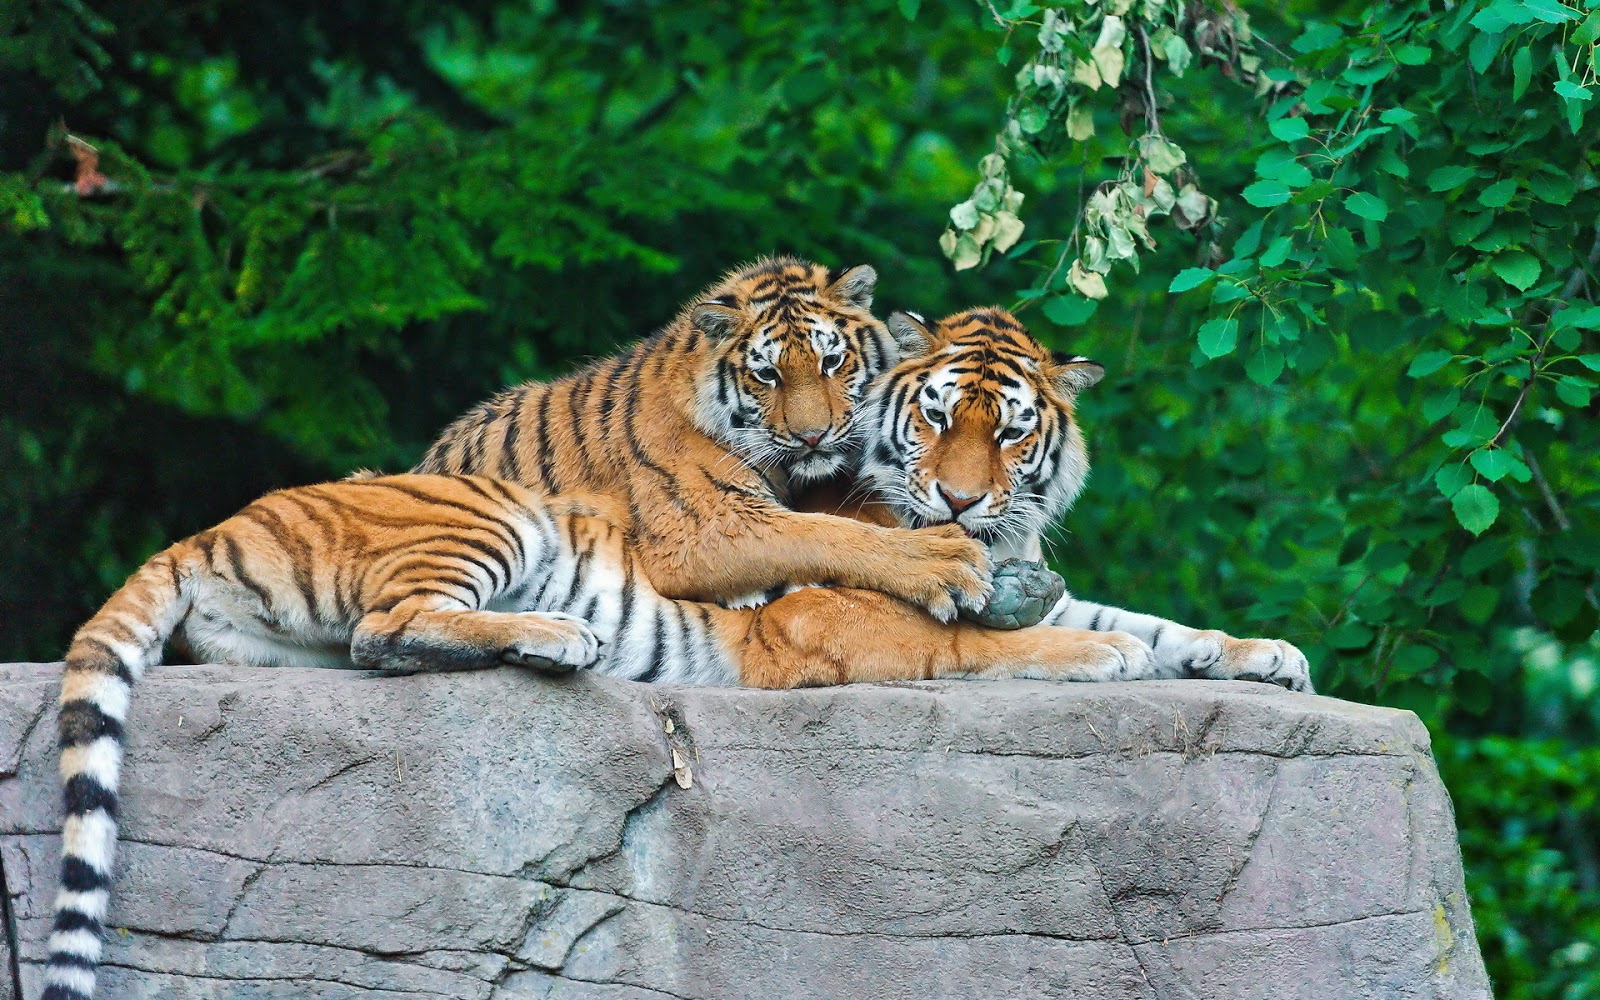  Población mundial de tigres aumenta por primera vez en un siglo